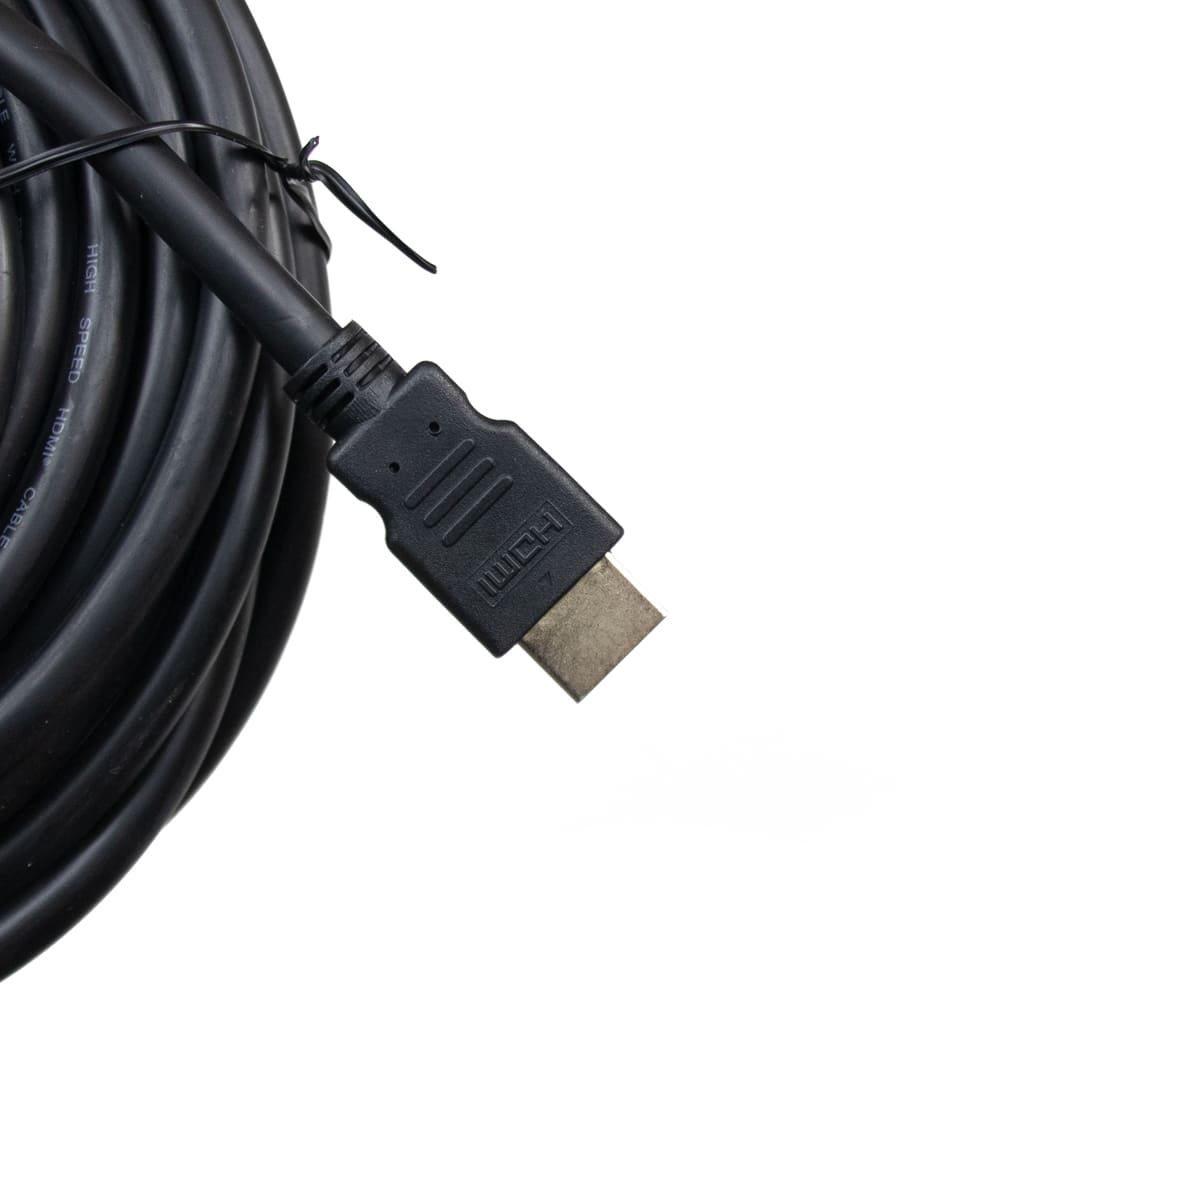 Anschlusskabel 10m HDMI 19pol 3D + Netzwerkfähig